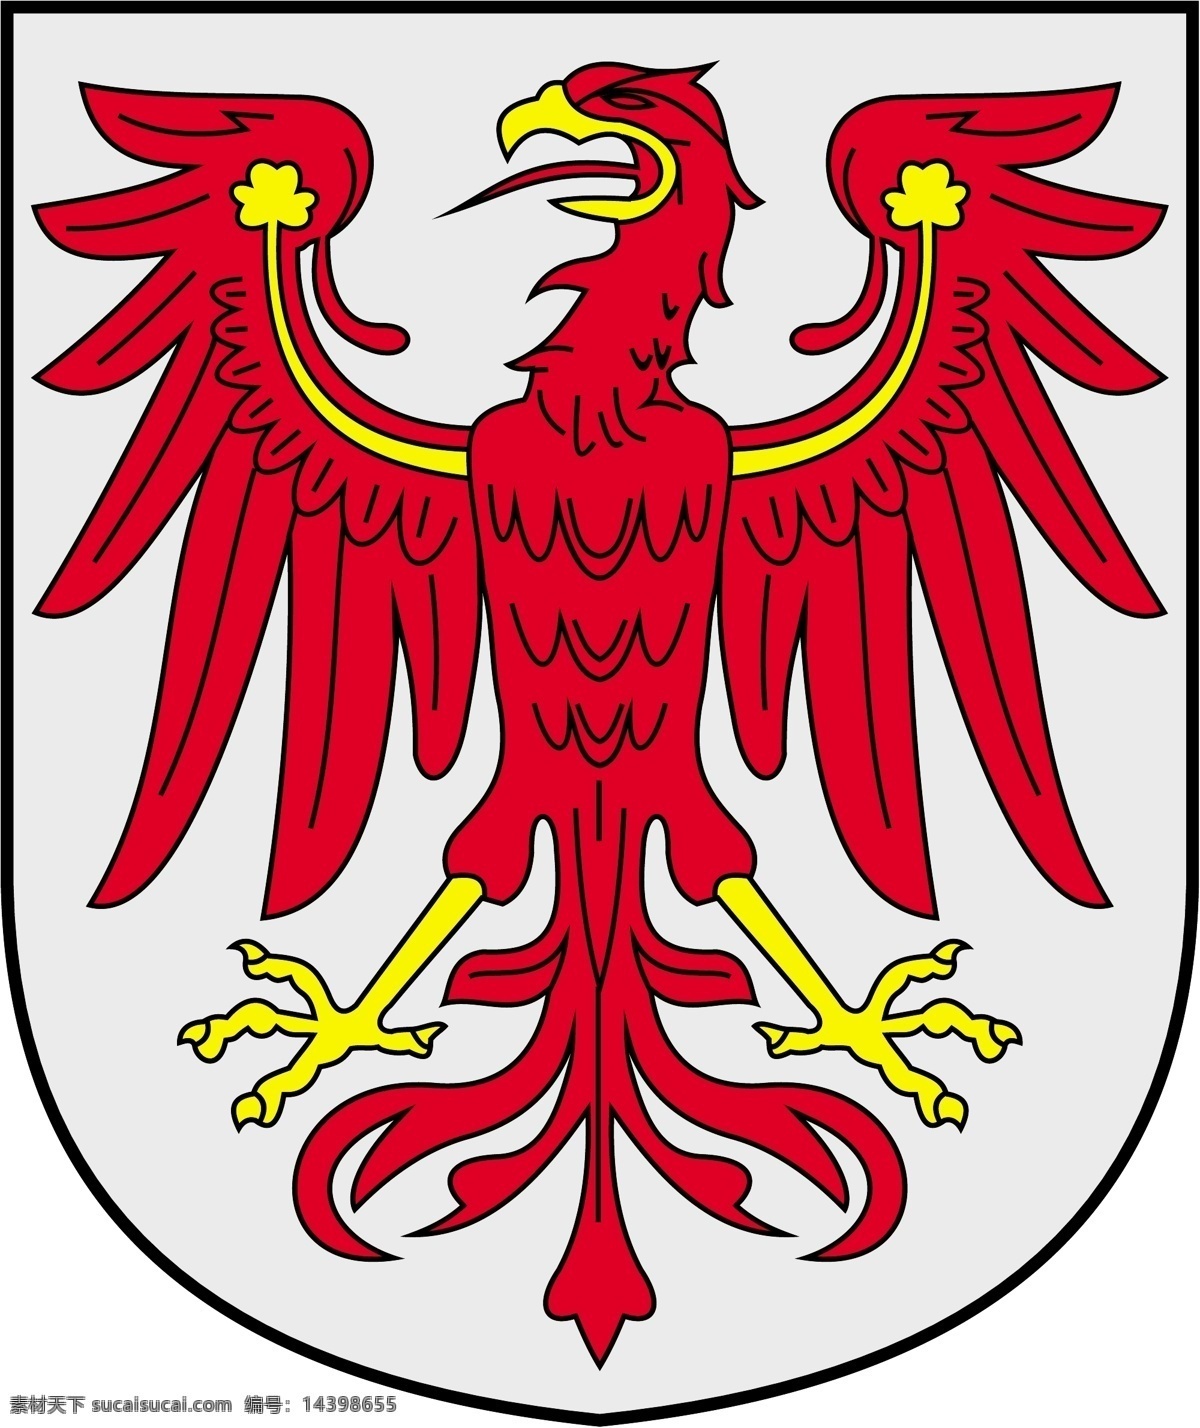 鹰徽章 鹰 鸟 徽标 徽章 章仔 服装用图 标志 欧洲图 其他图标 标志图标